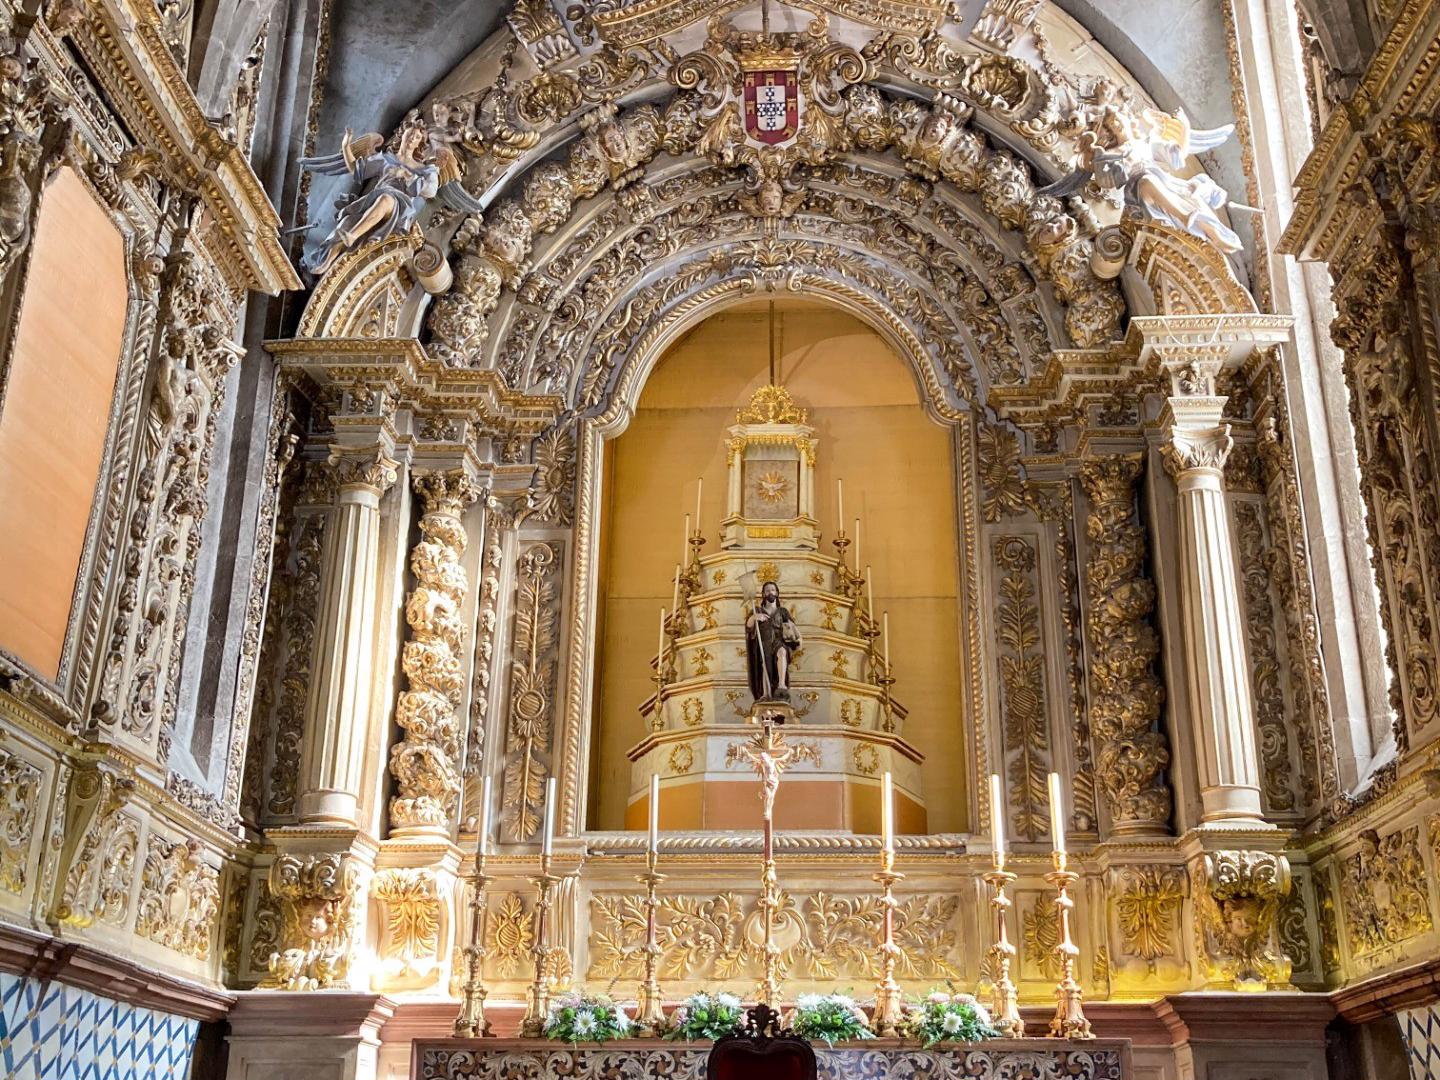 Altar - A Igreja apresenta uma planta retangular, estruturada em três naves e com uma torre sineira com um relógio do século XVI. Os seus portais são luxuosamente decorados ao estilo manuelino.